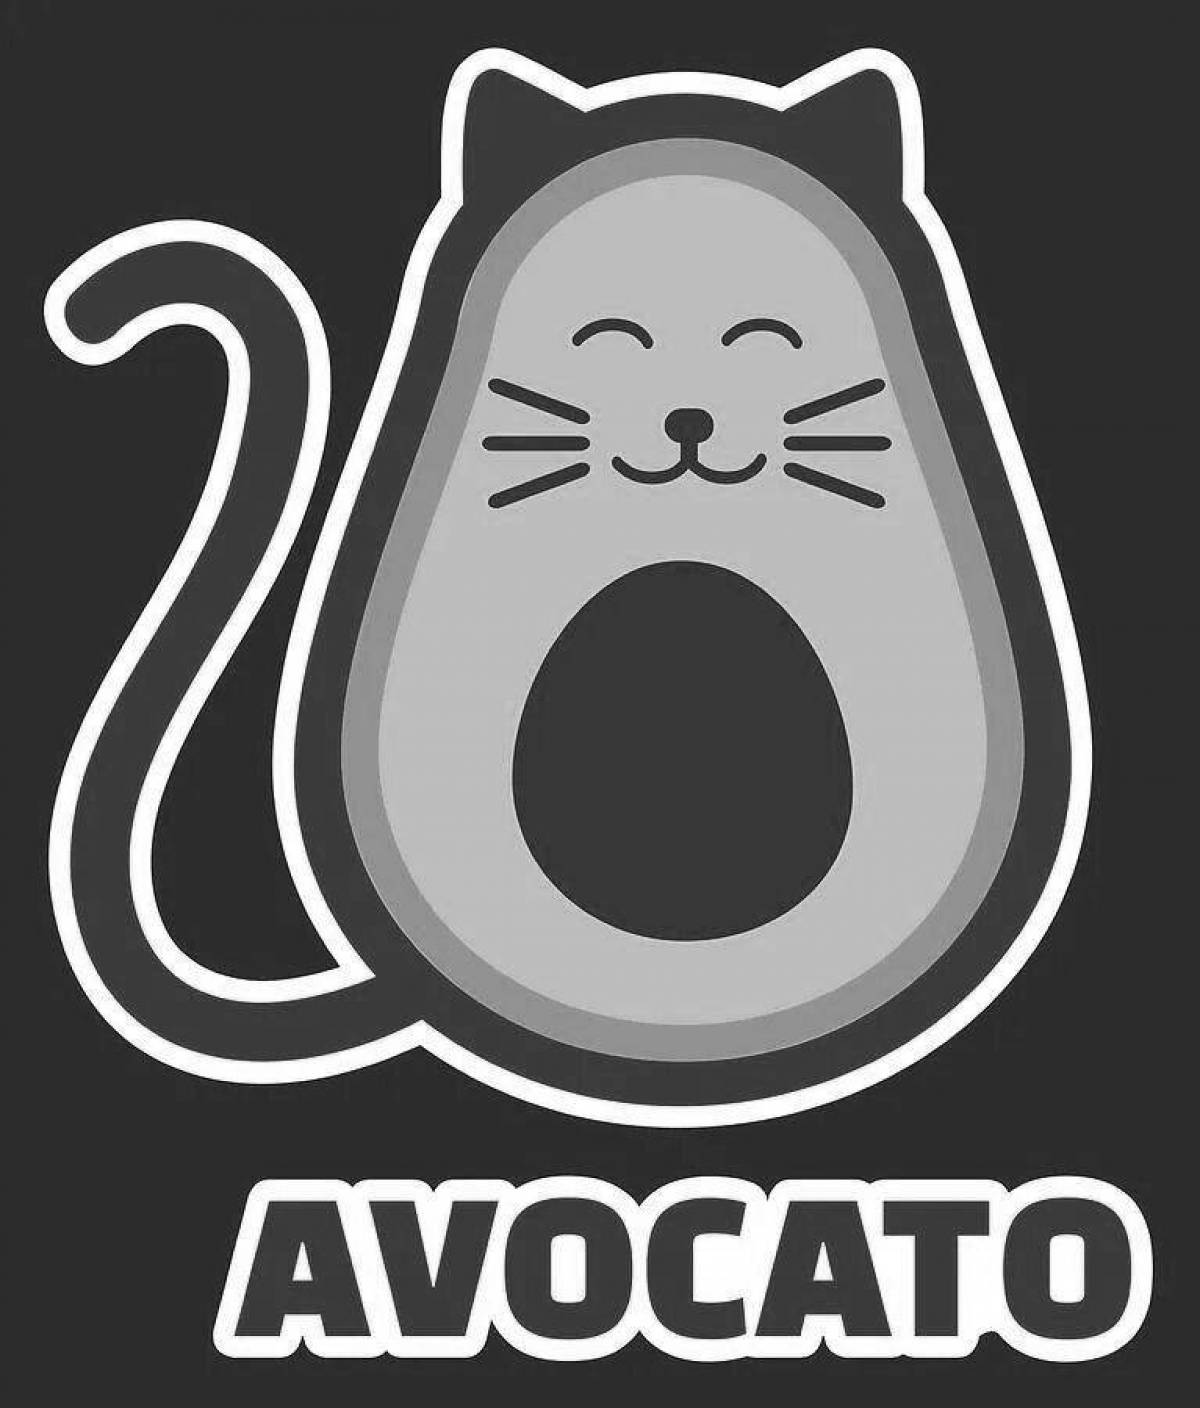 Colouring happy avocado cat